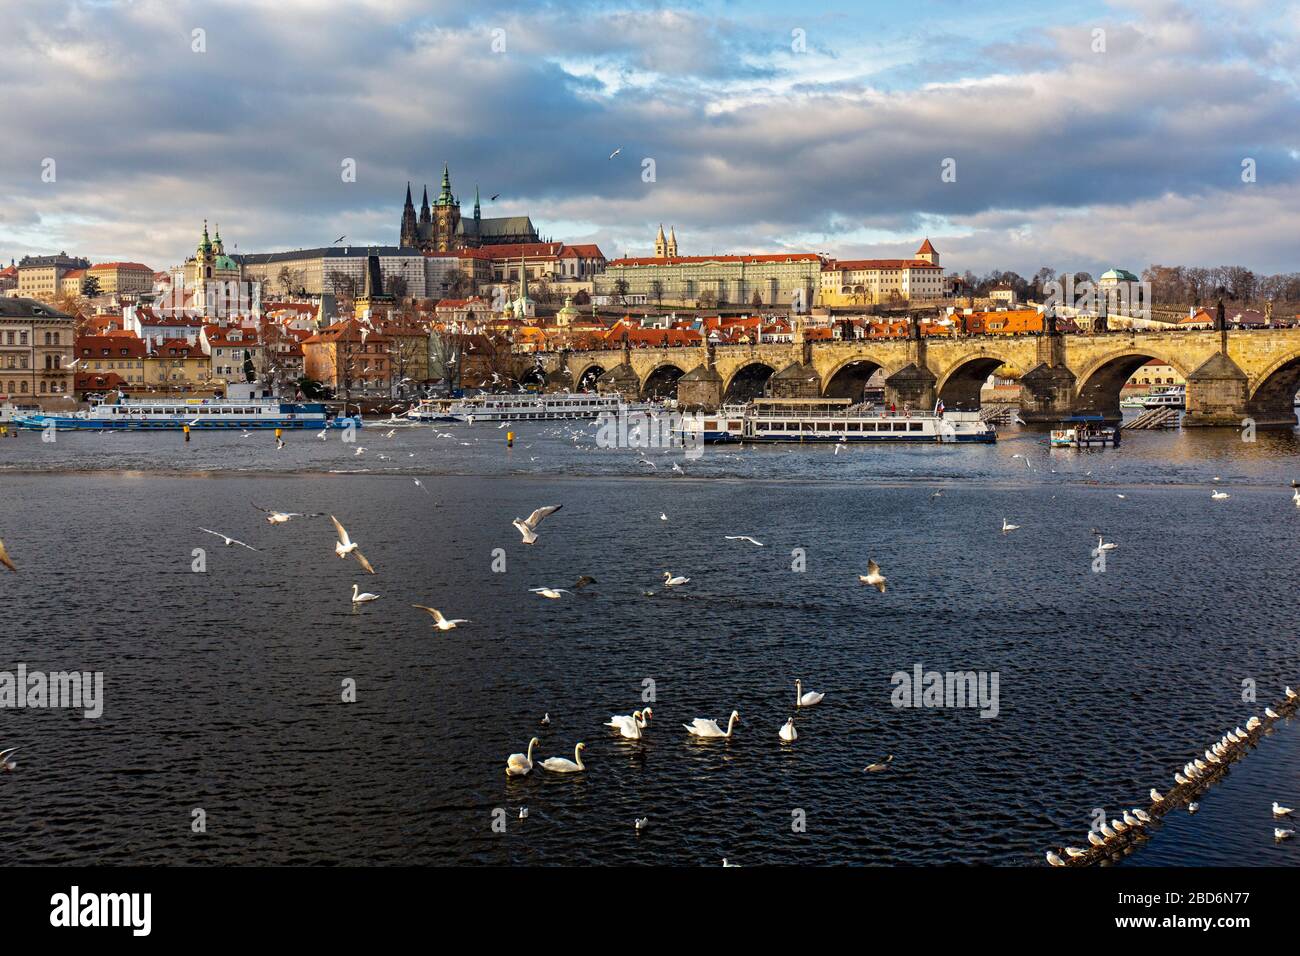 Blick über die Moldau auf die Prager Burg (Hradschin), Prag, Tscechische Republik Foto Stock